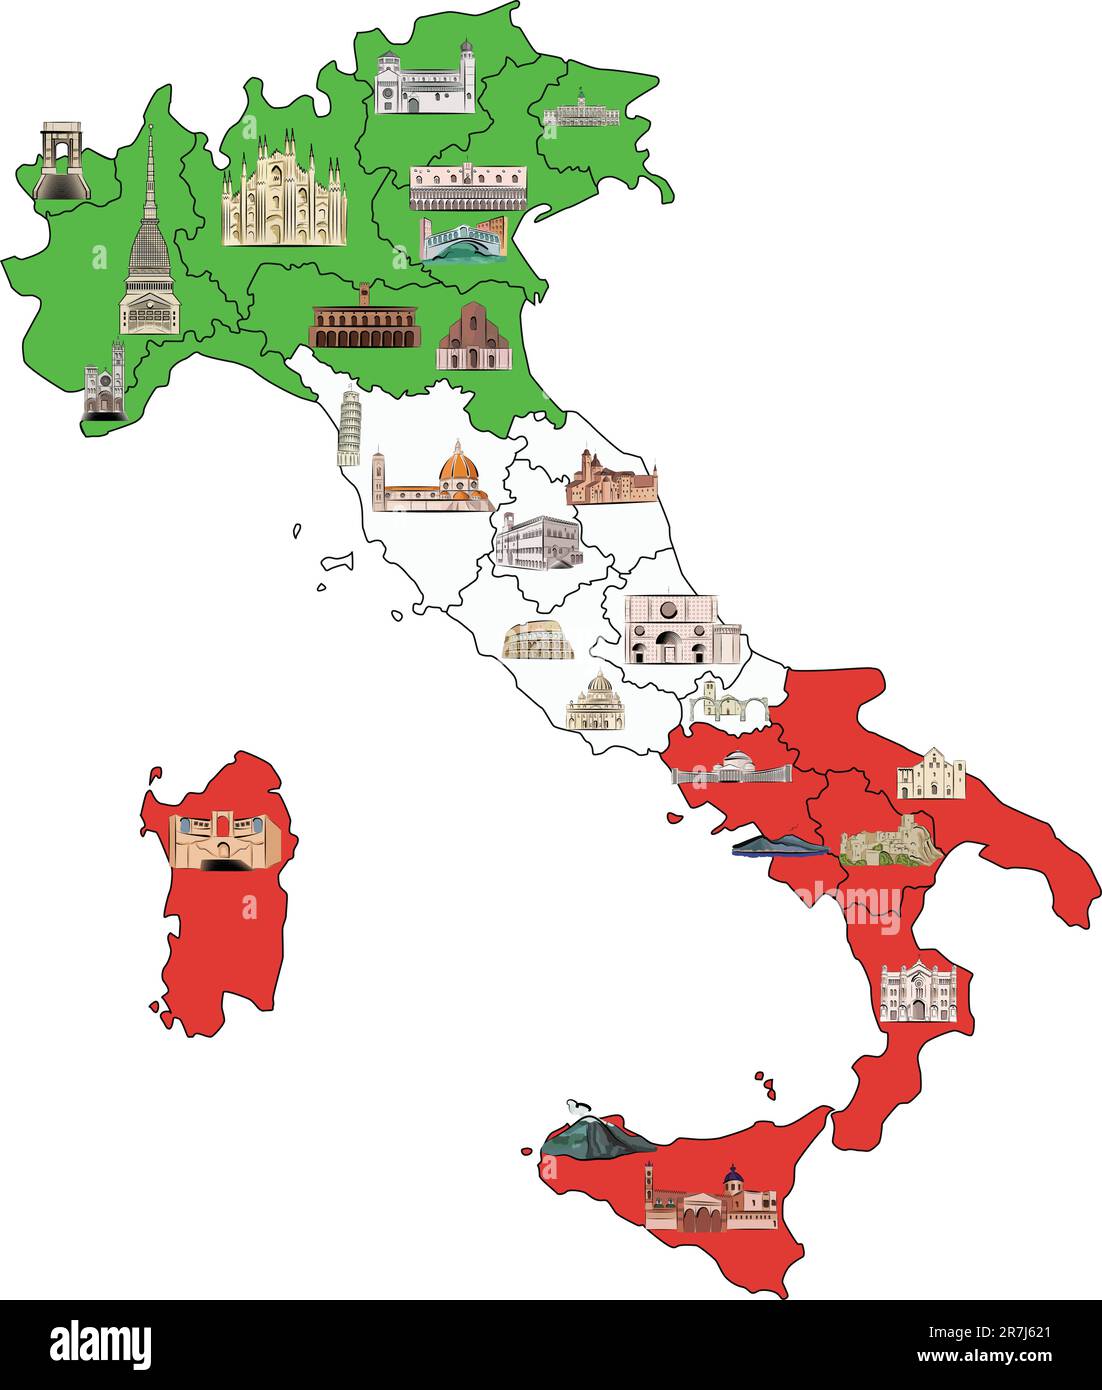 Mappa d'Italia divisa per regioni con le attrazioni più famose in ognuna. Attrazioni disegnate in stile acquerello. Illustrazione vettoriale. Illustrazione Vettoriale